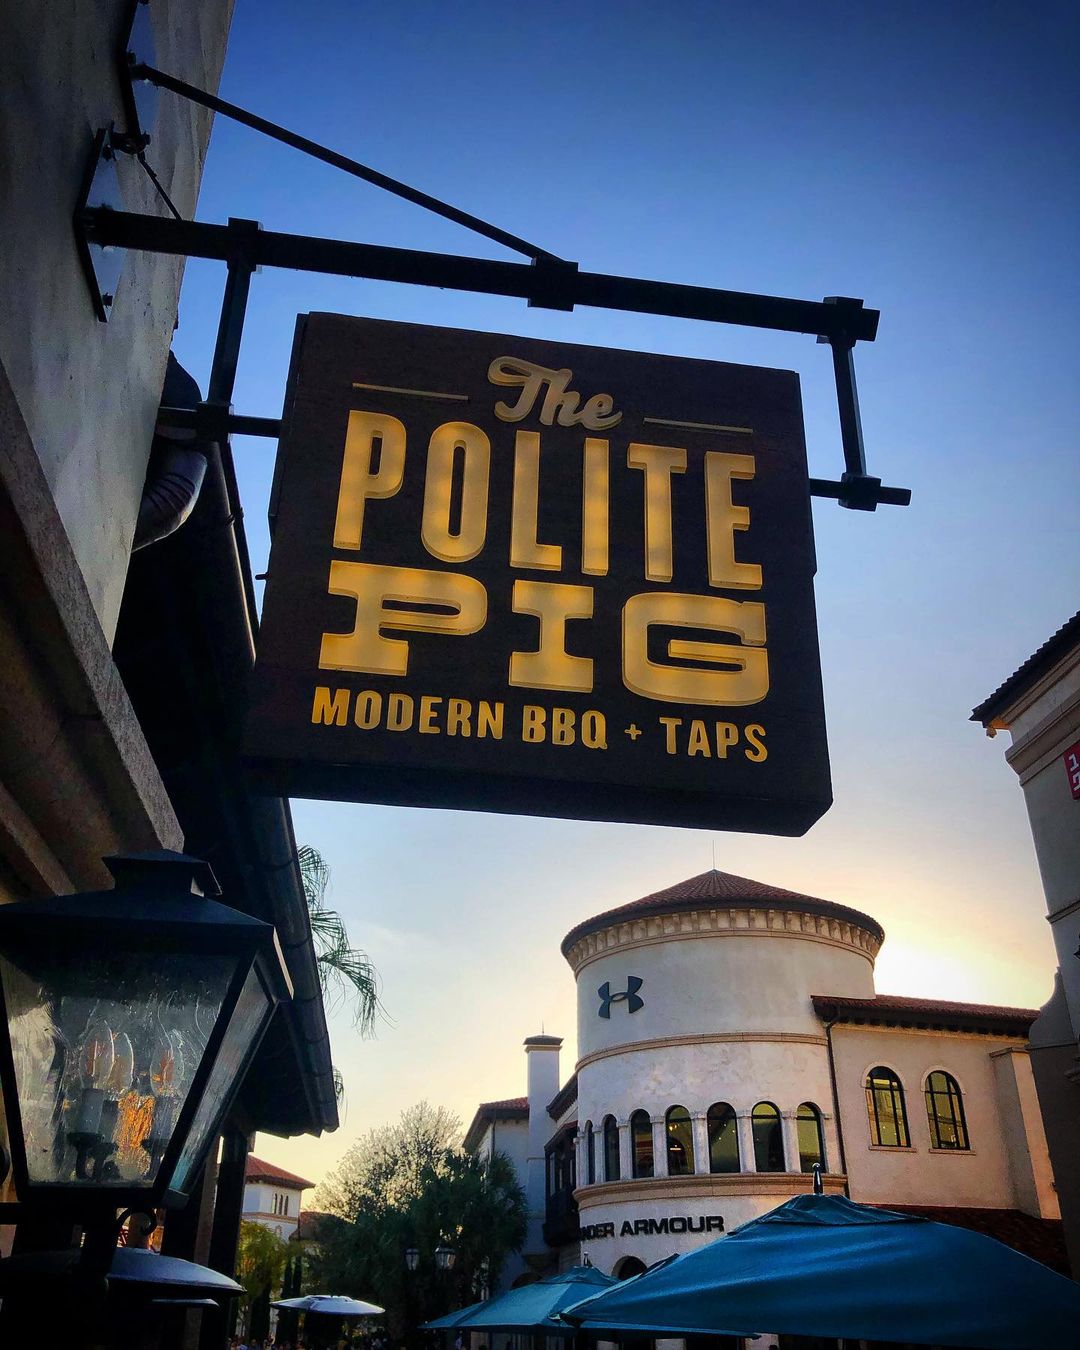 Polite Pig in Disney Springs is hiring